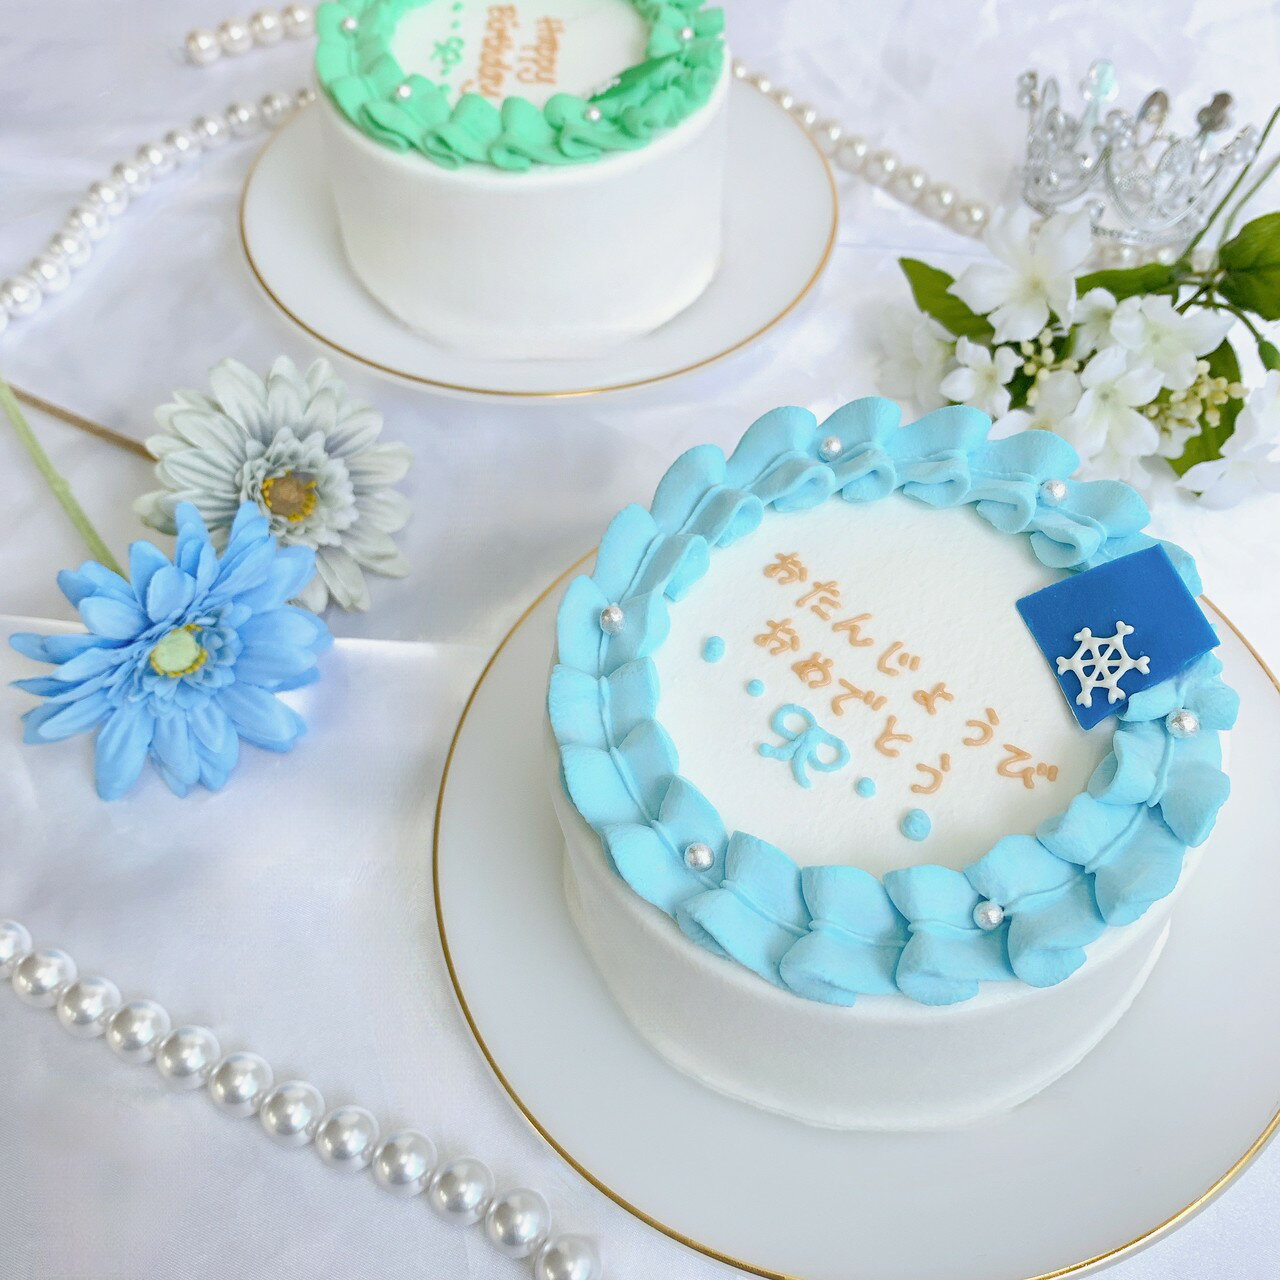 おもしろいケーキ 《選べる8色&お好きなメッセージ》 雪だるま センイルケーキ 5号（3〜4名様向け）【 誕生日ケーキ センイルケーキ かわいい おしゃれ お祝い 記念日 インスタ映え ケーキ スイーツ ホールケーキ おもしろ ケーキ サプライズ ケーキ ギフト プレゼント 贈り物 】